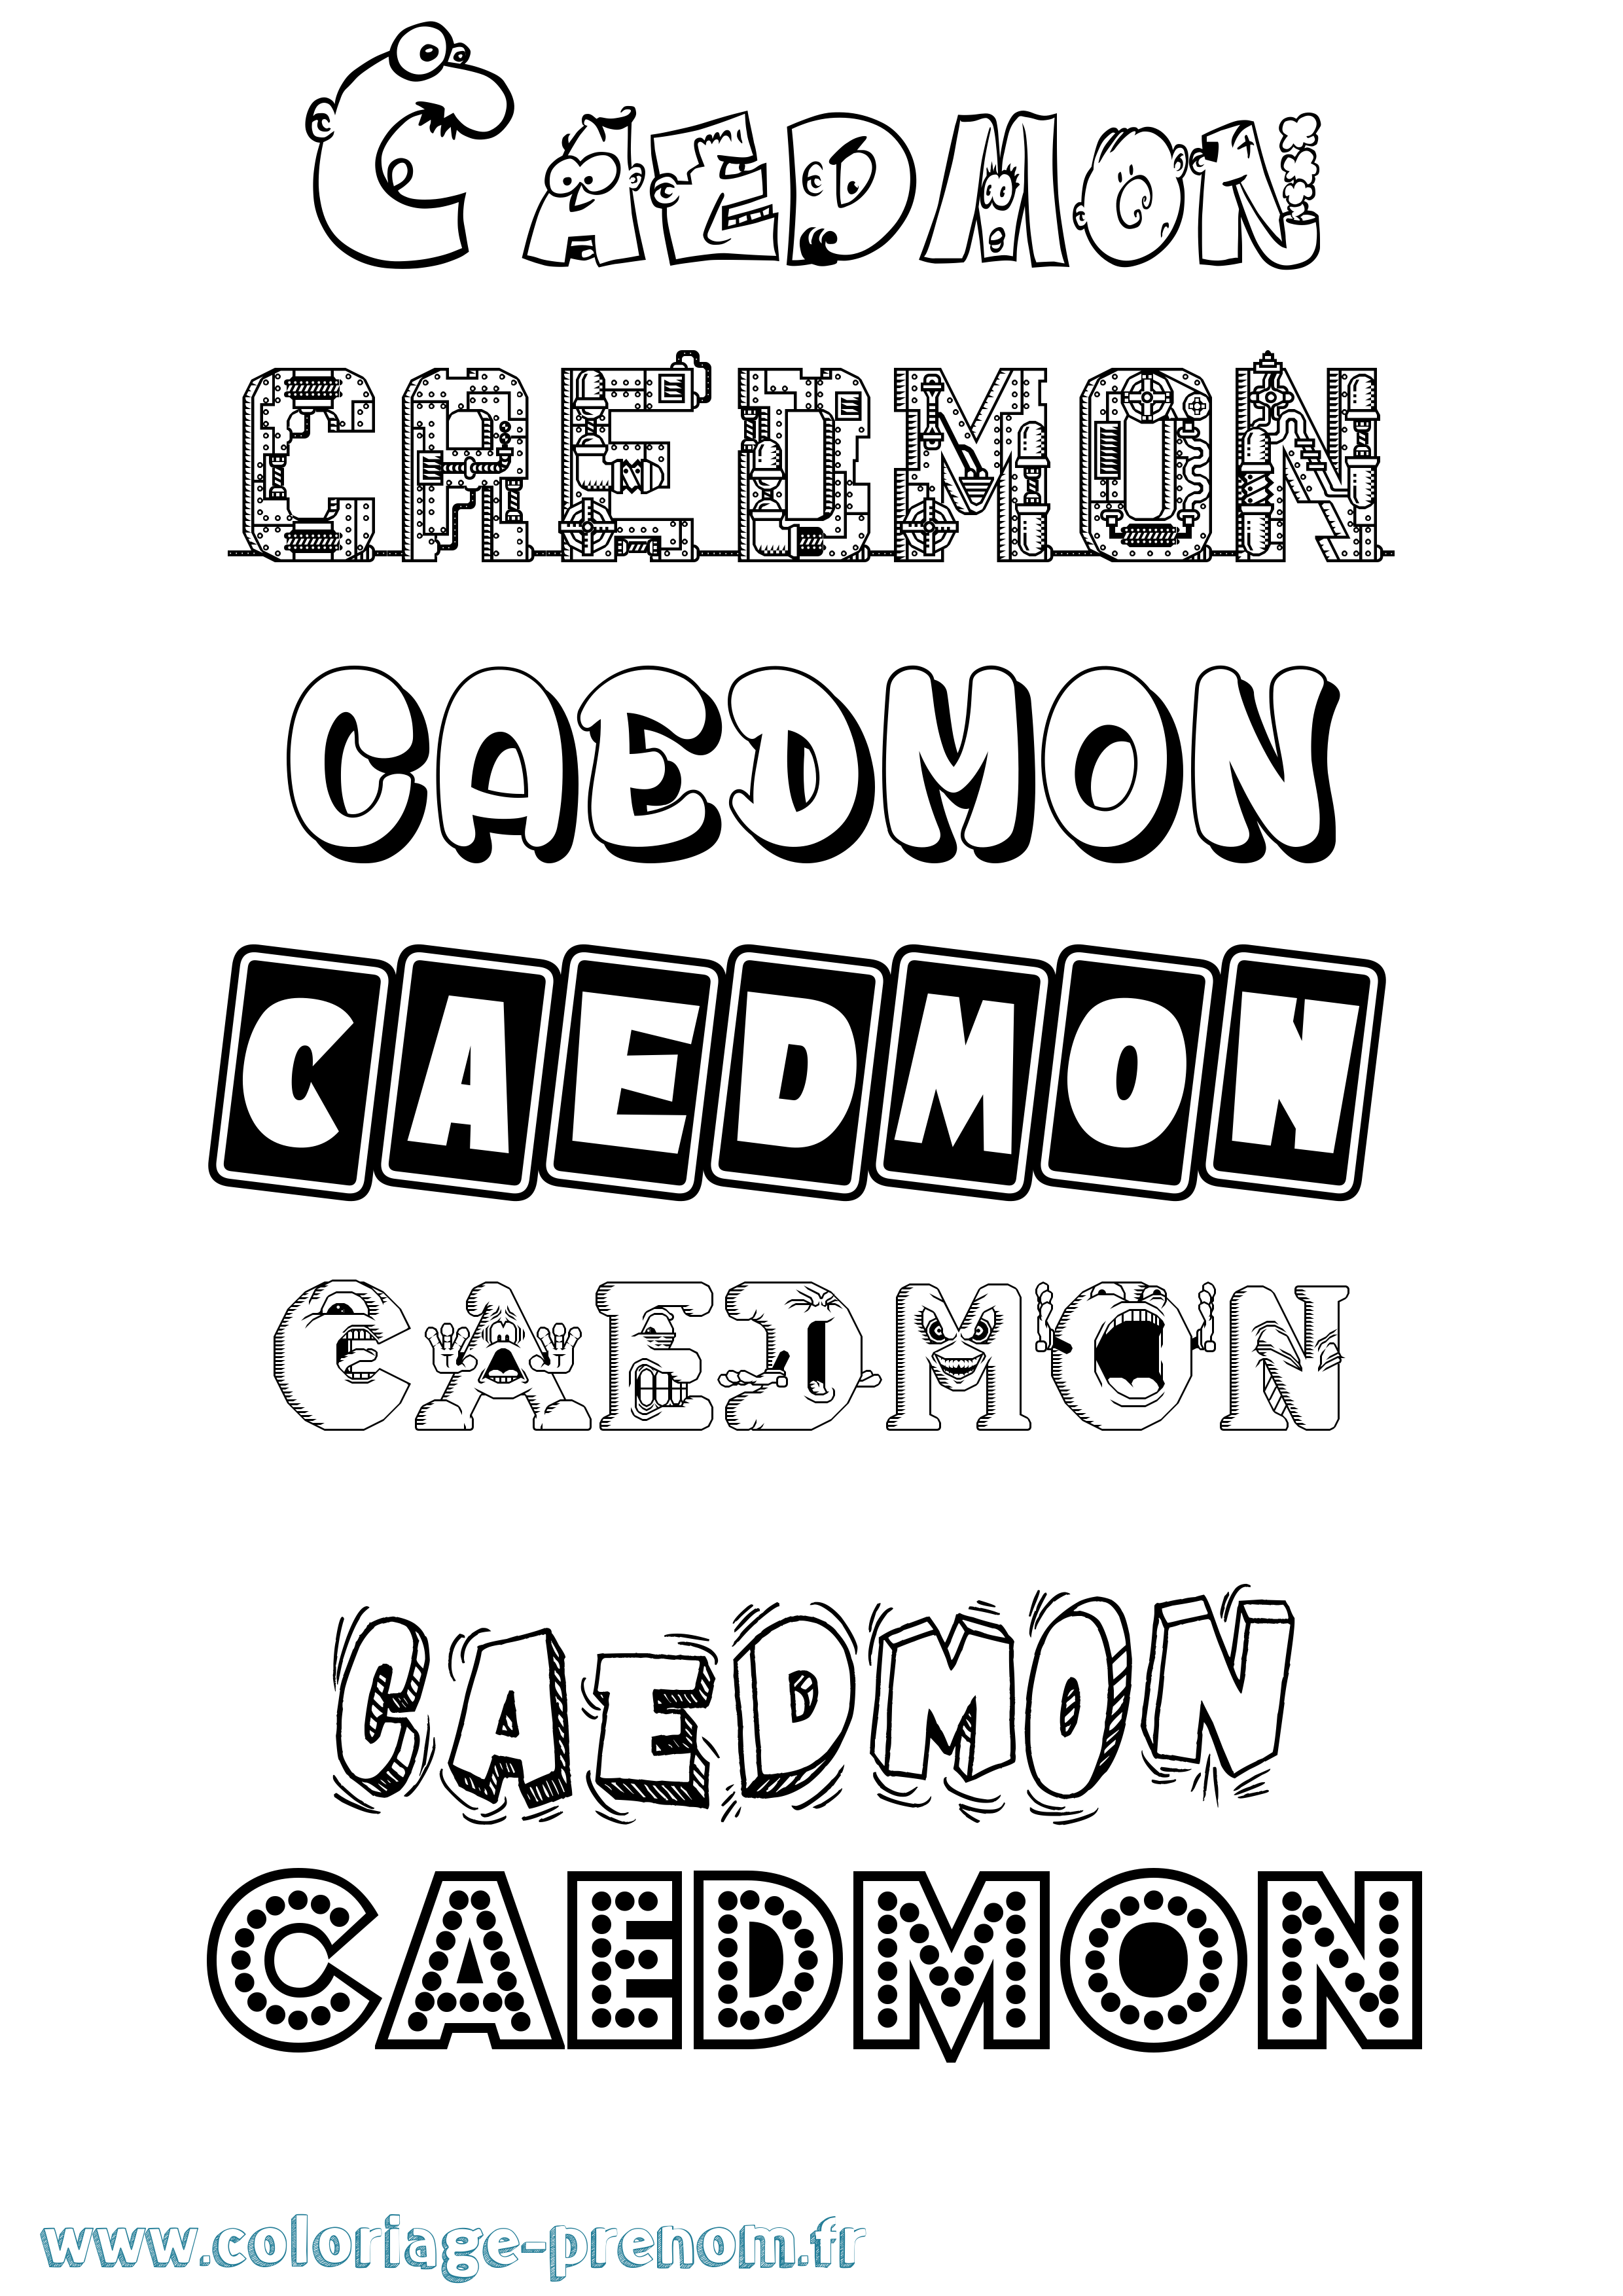 Coloriage prénom Caedmon Fun